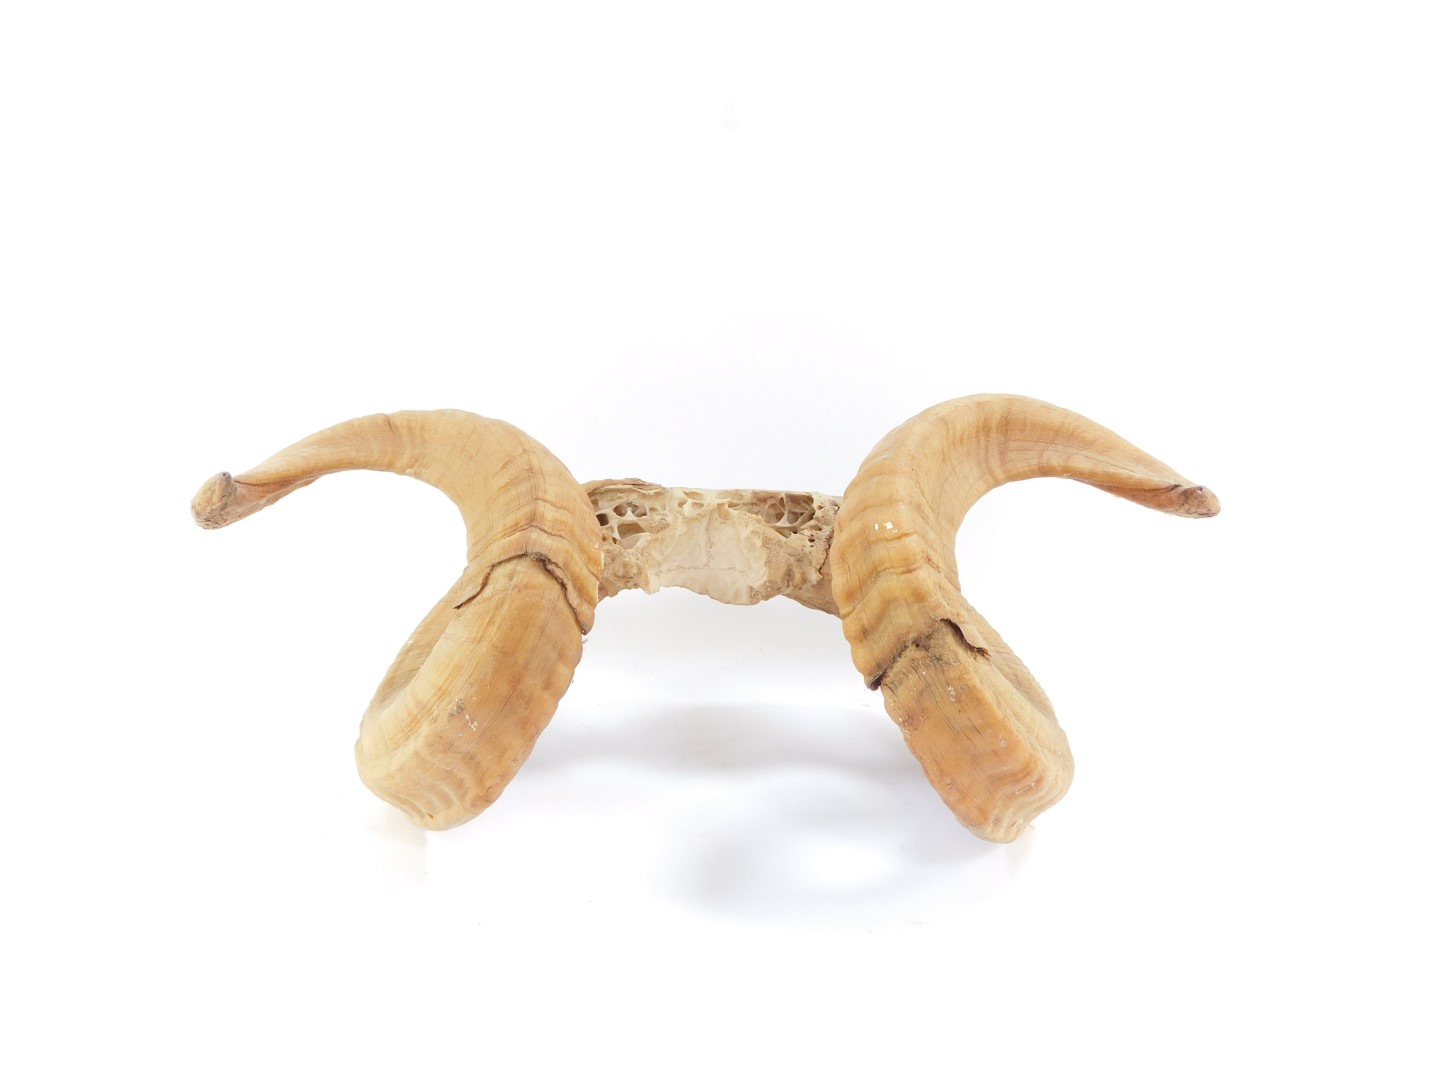 A pair of ram's horns, 49cm wide.